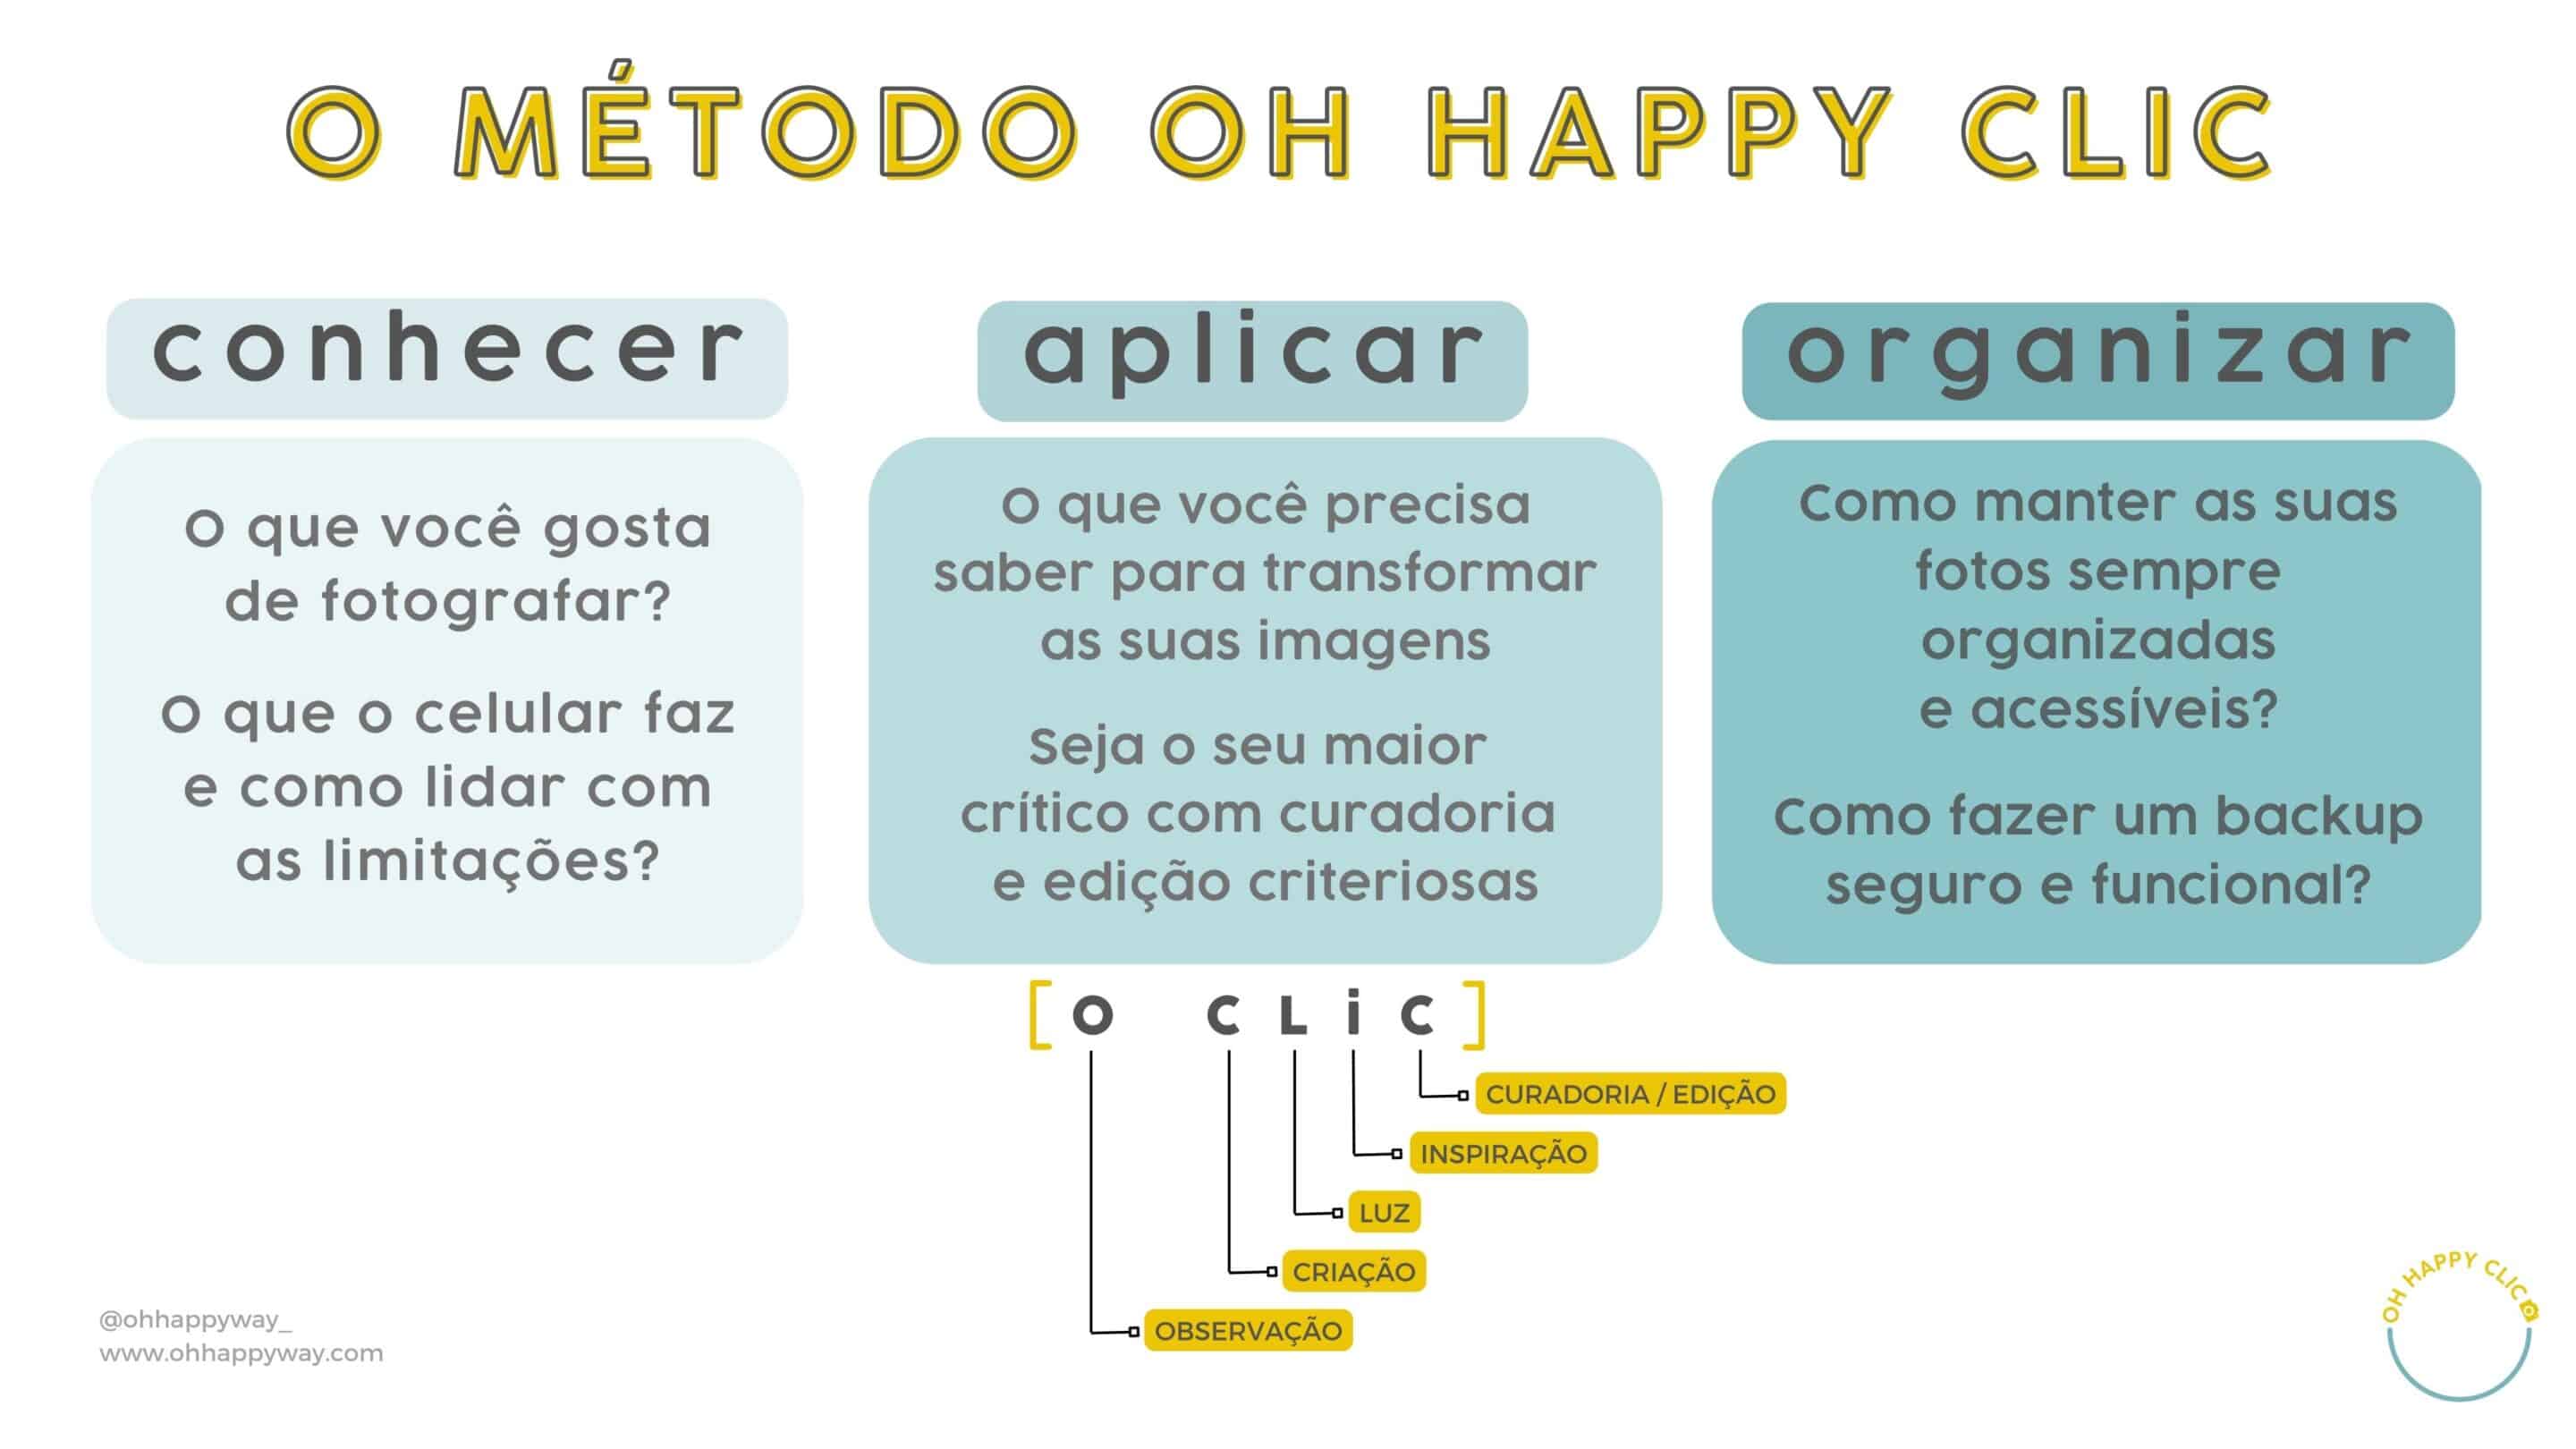 Infográfico com o método Oh Happy CLiC, para facilitar o aprendizado em fotografia